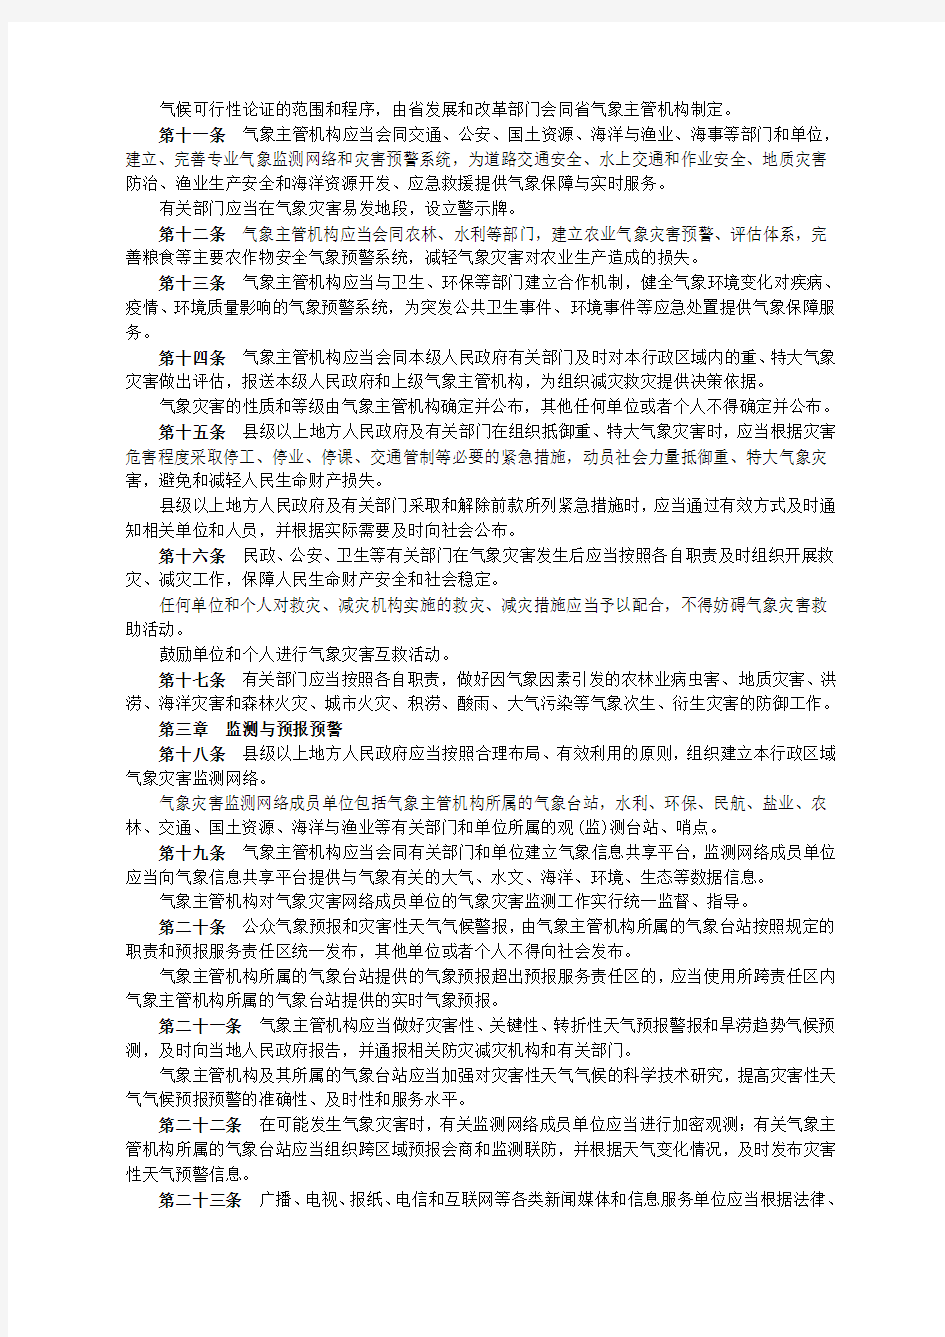 江苏省第十届人大常委会公告[2006]第117号_江苏省气象灾害防御条例